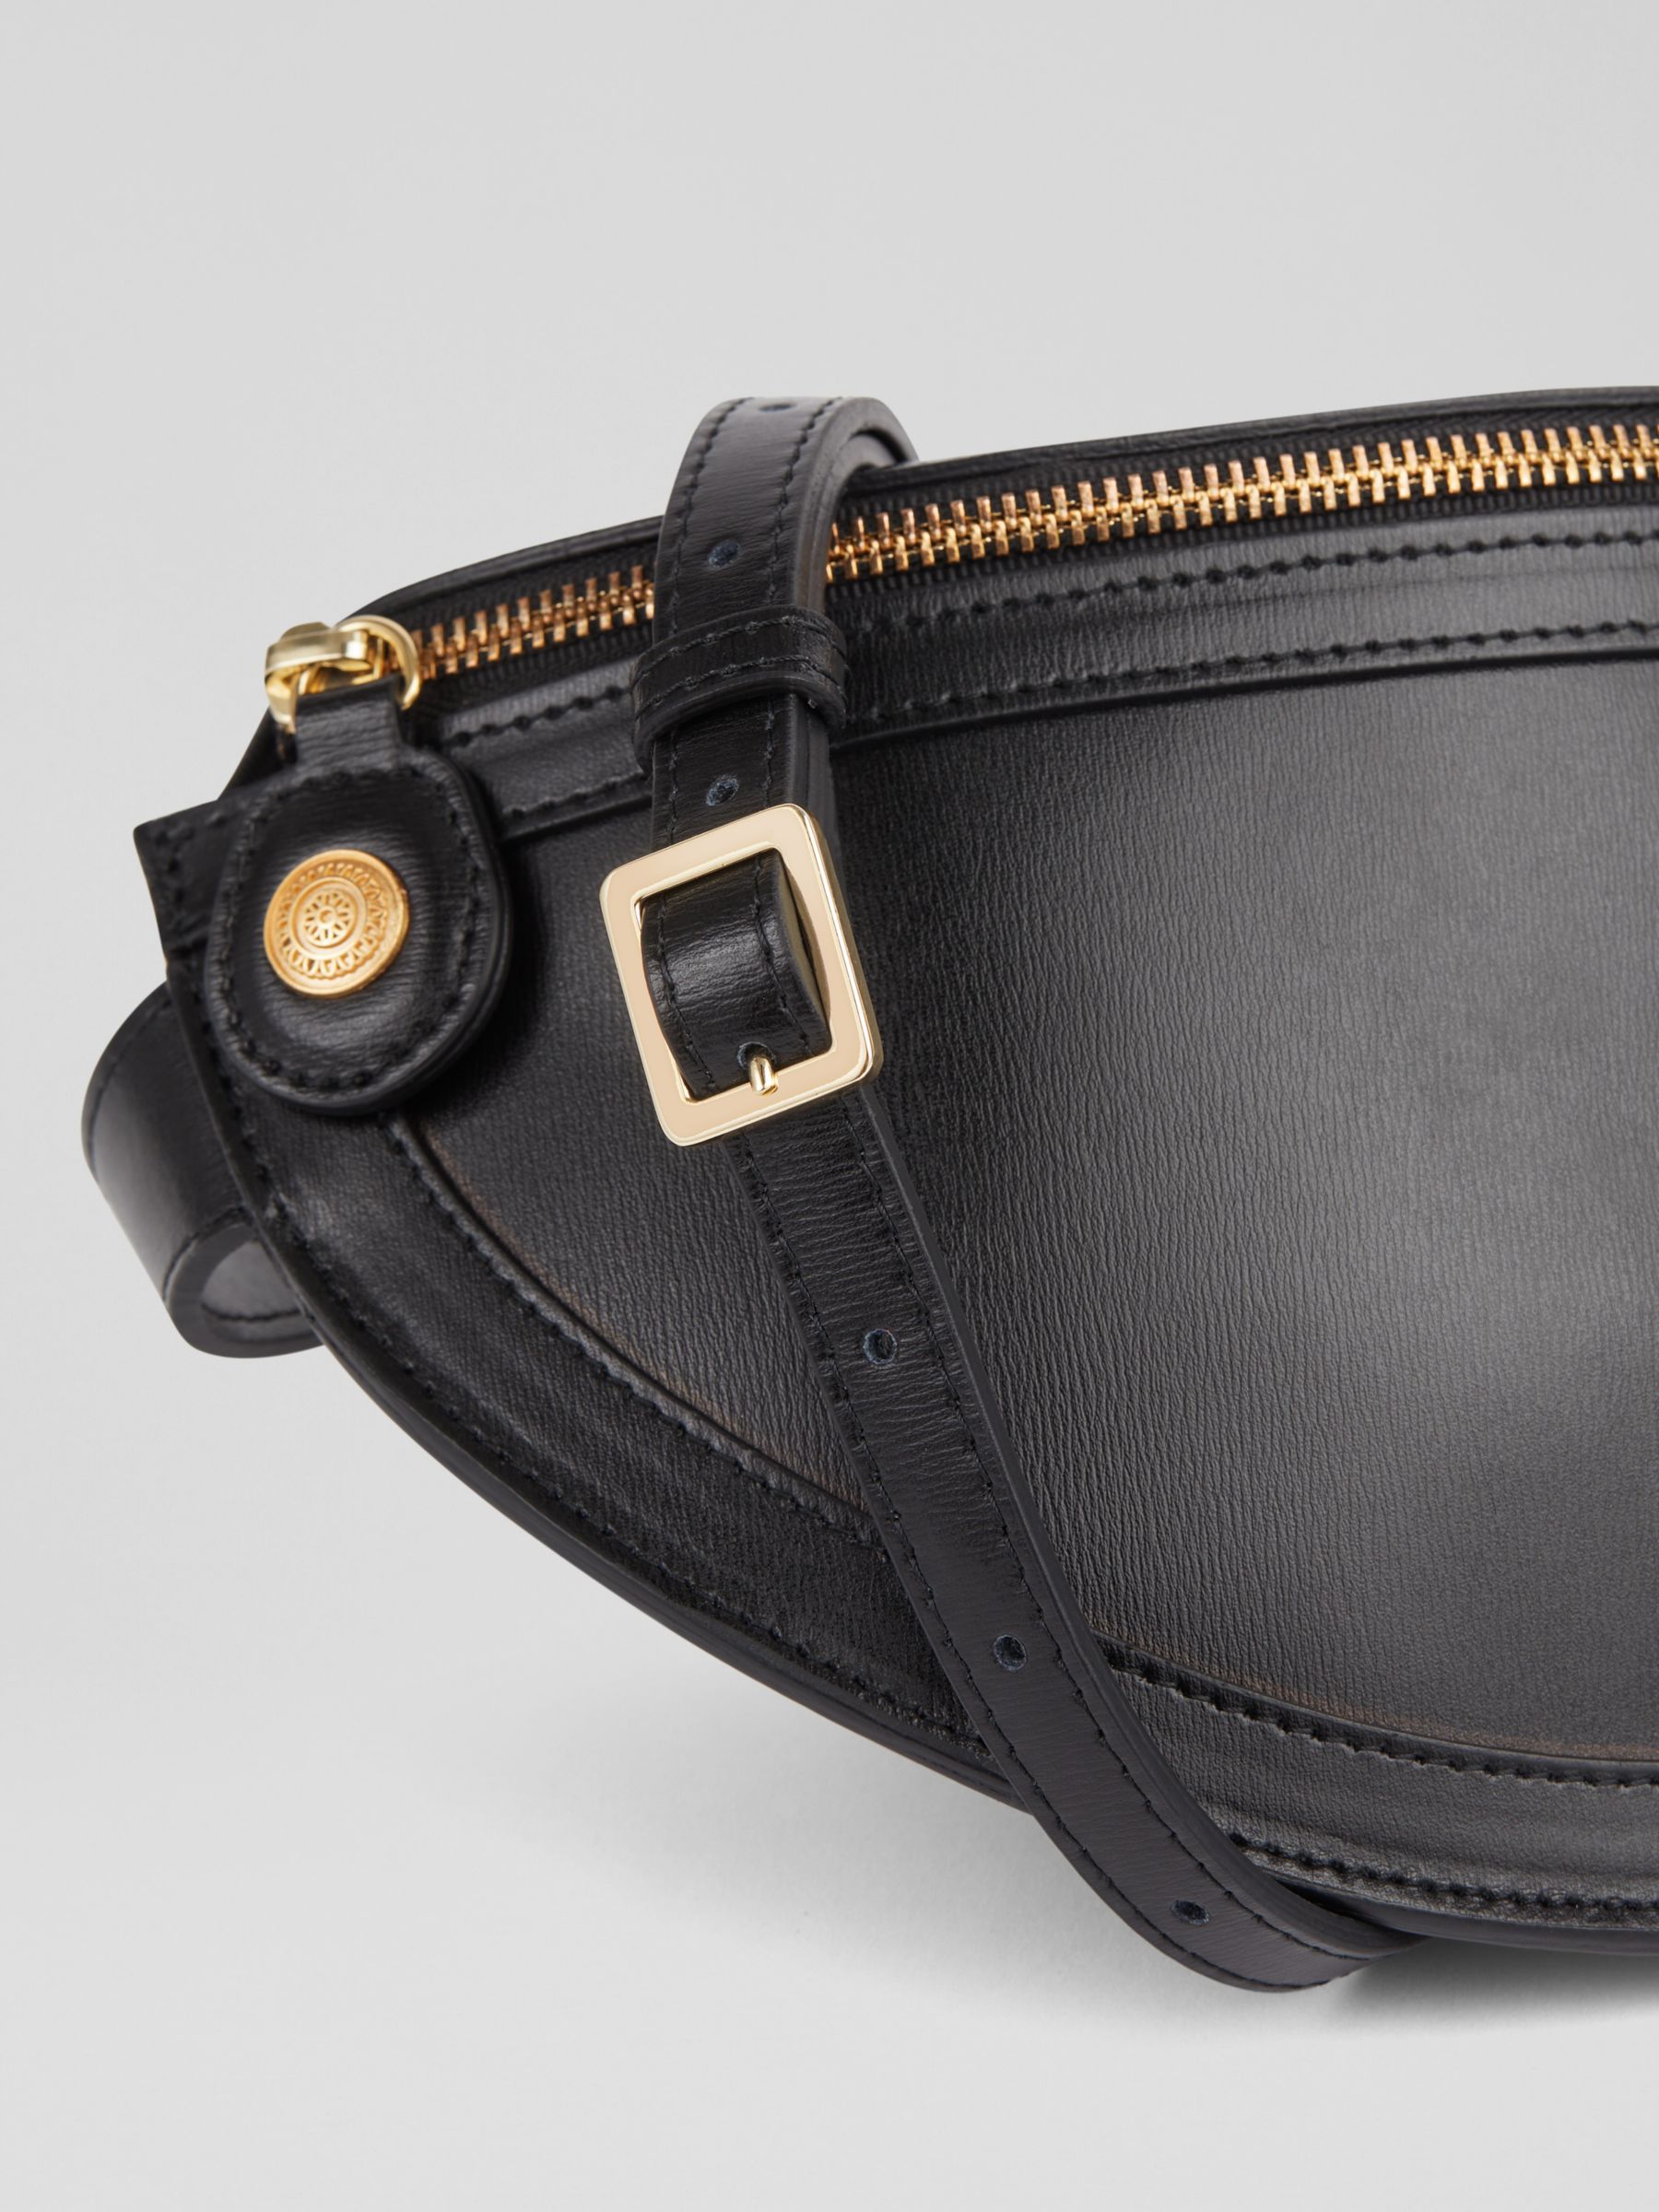 Buy L.K.Bennett Greta Leather Cross Body Bag Online at johnlewis.com